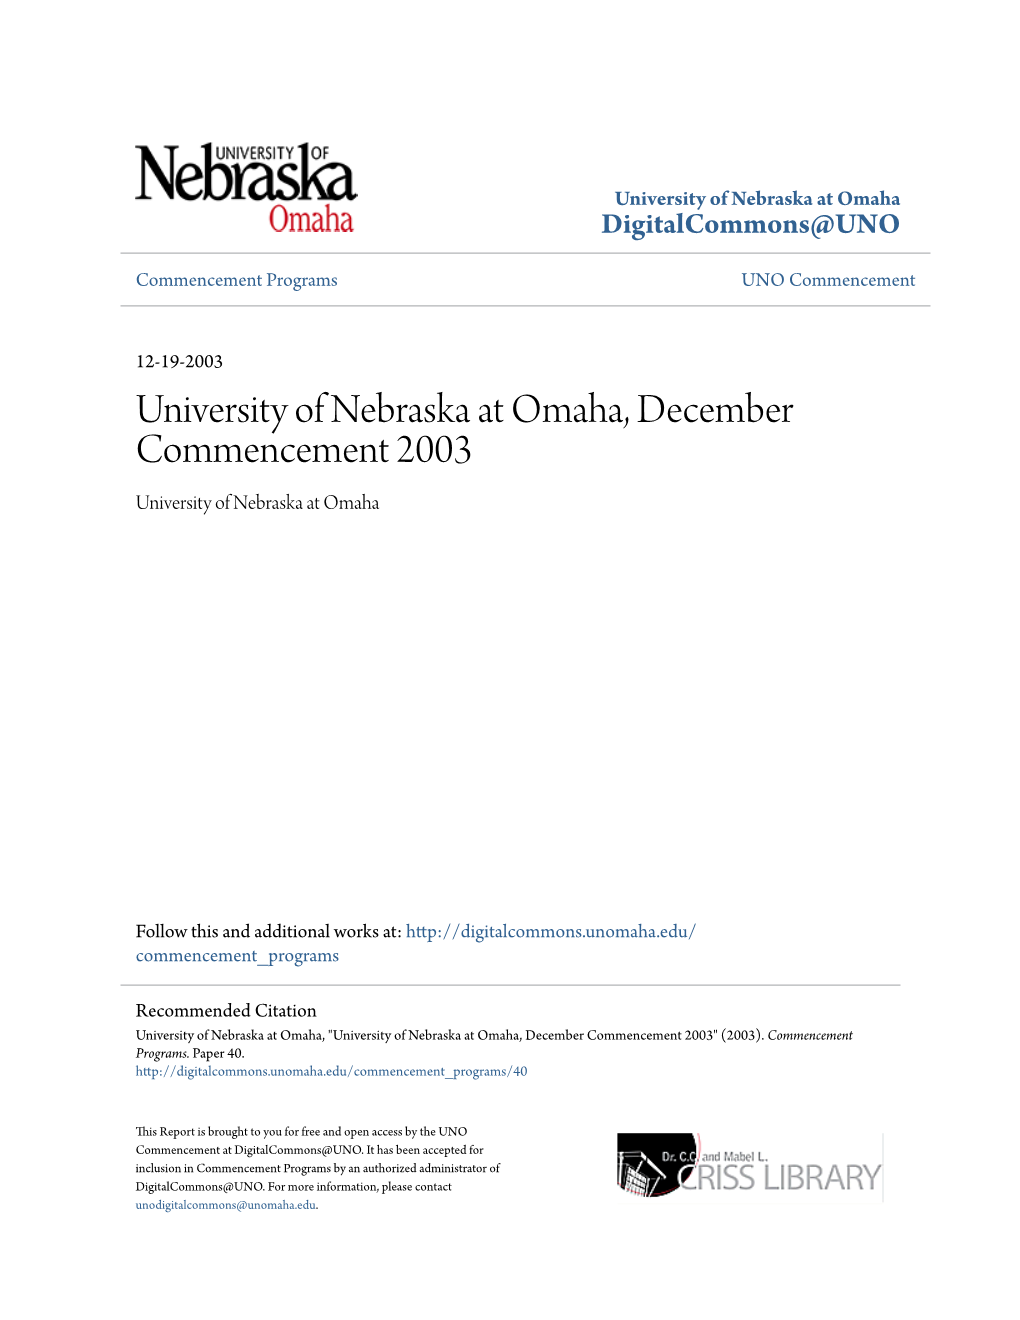 University of Nebraska at Omaha, December Commencement 2003 University of Nebraska at Omaha